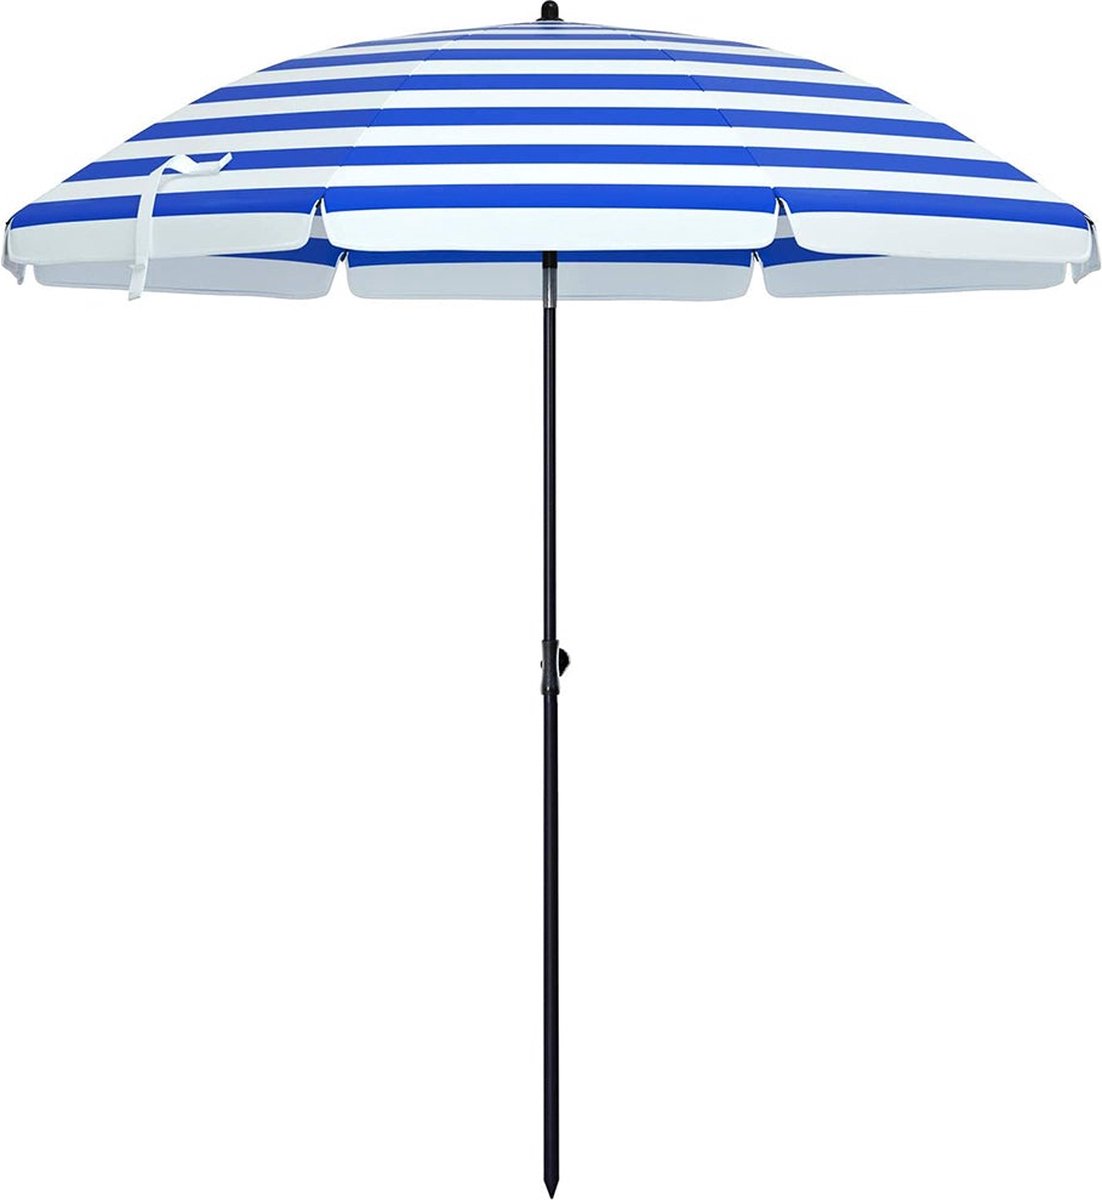 Parasol - Voor strand - Tuinscherm - Uv-bescherming tot UPF 50+ - Kantelbaar - Met draagtas - Gestreept blauw, wit